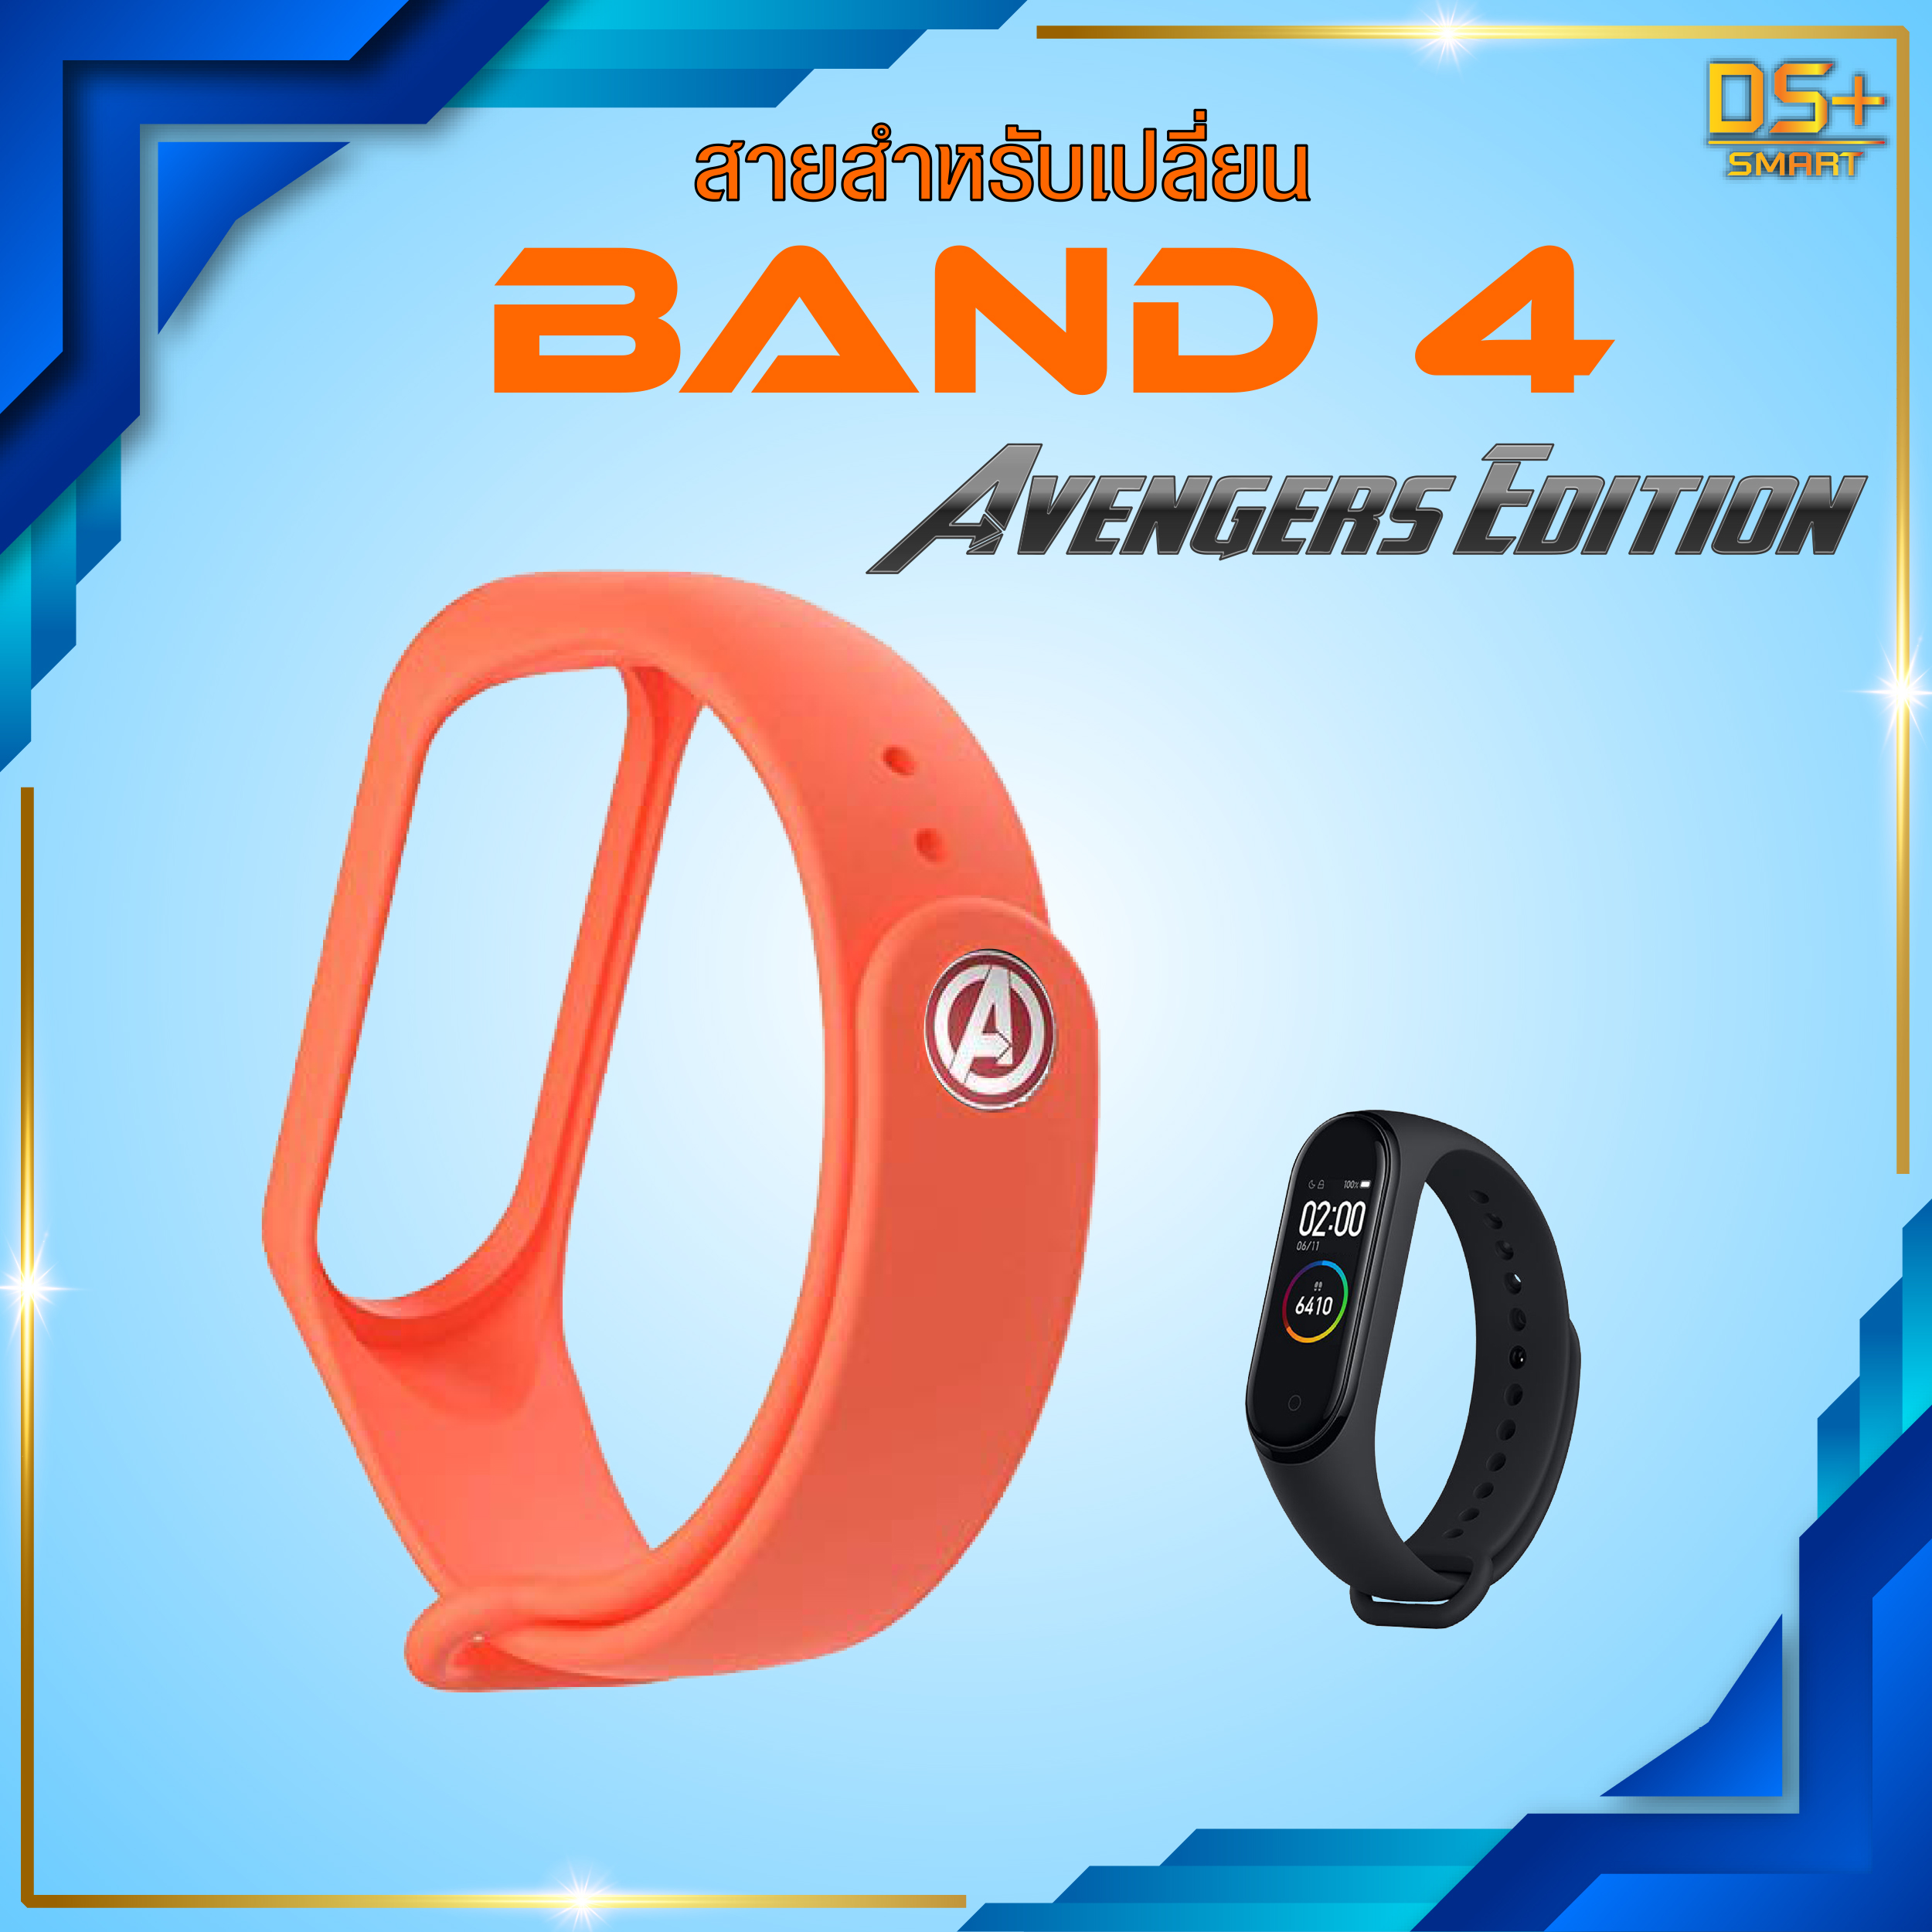 สายรัด สำหรับเปลี่ยน Mi Band 3/4 Wristband Strap [Avengers Edition]